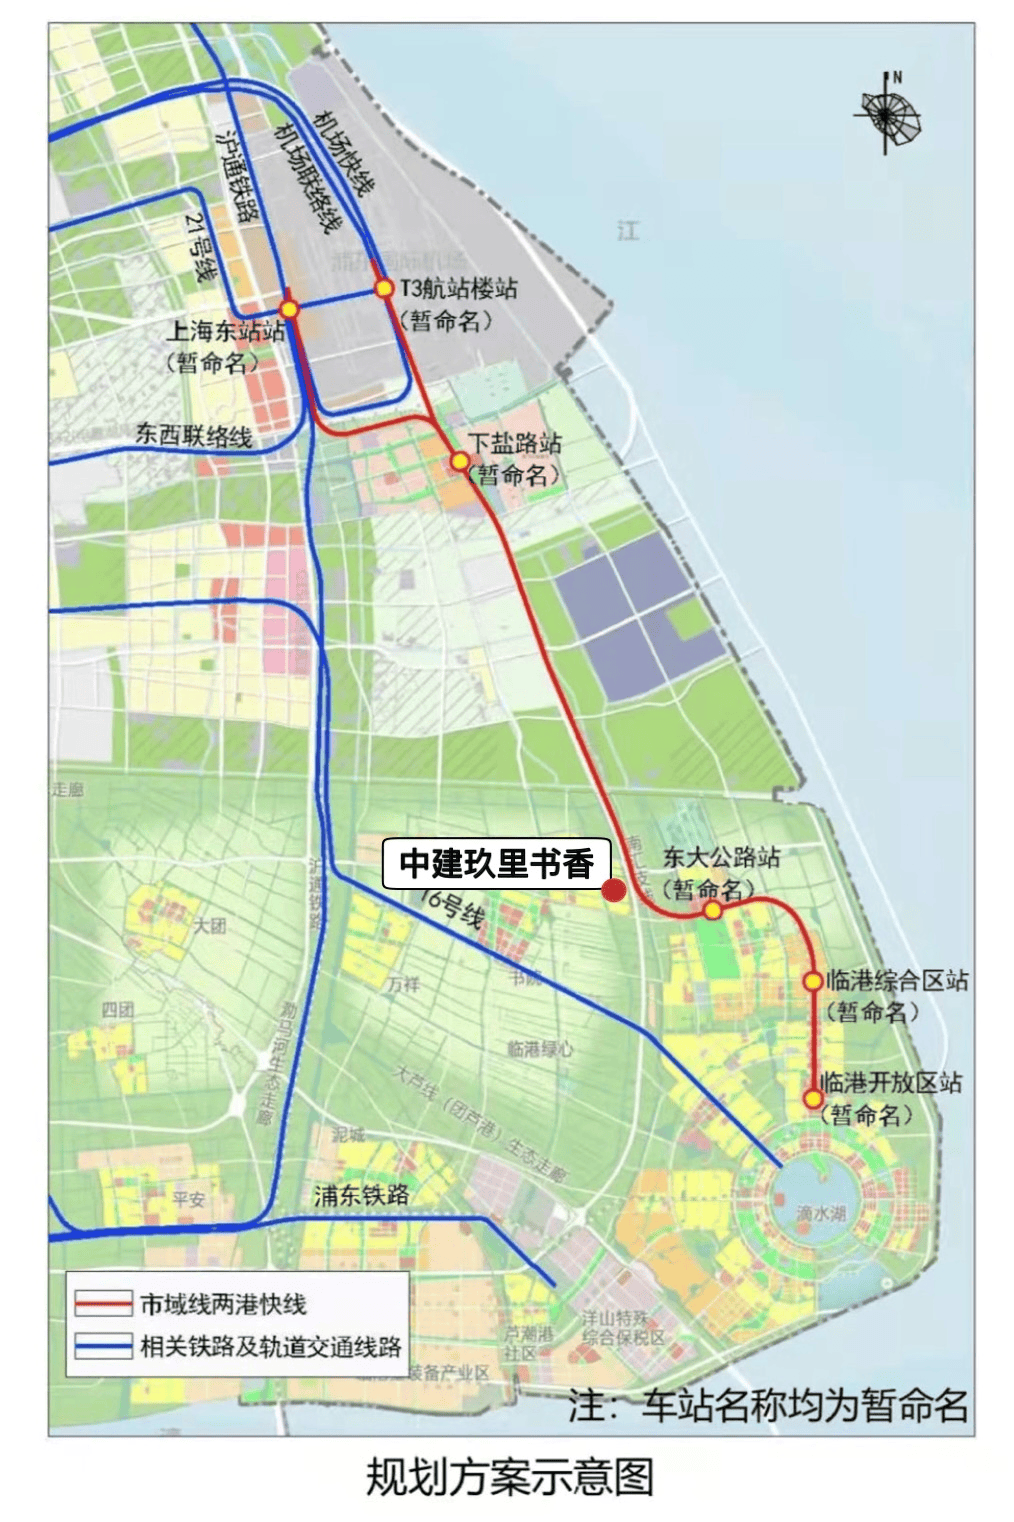 未来,通过两港快线从中建玖里书香项目出发,2站直达上海东站,2站直达